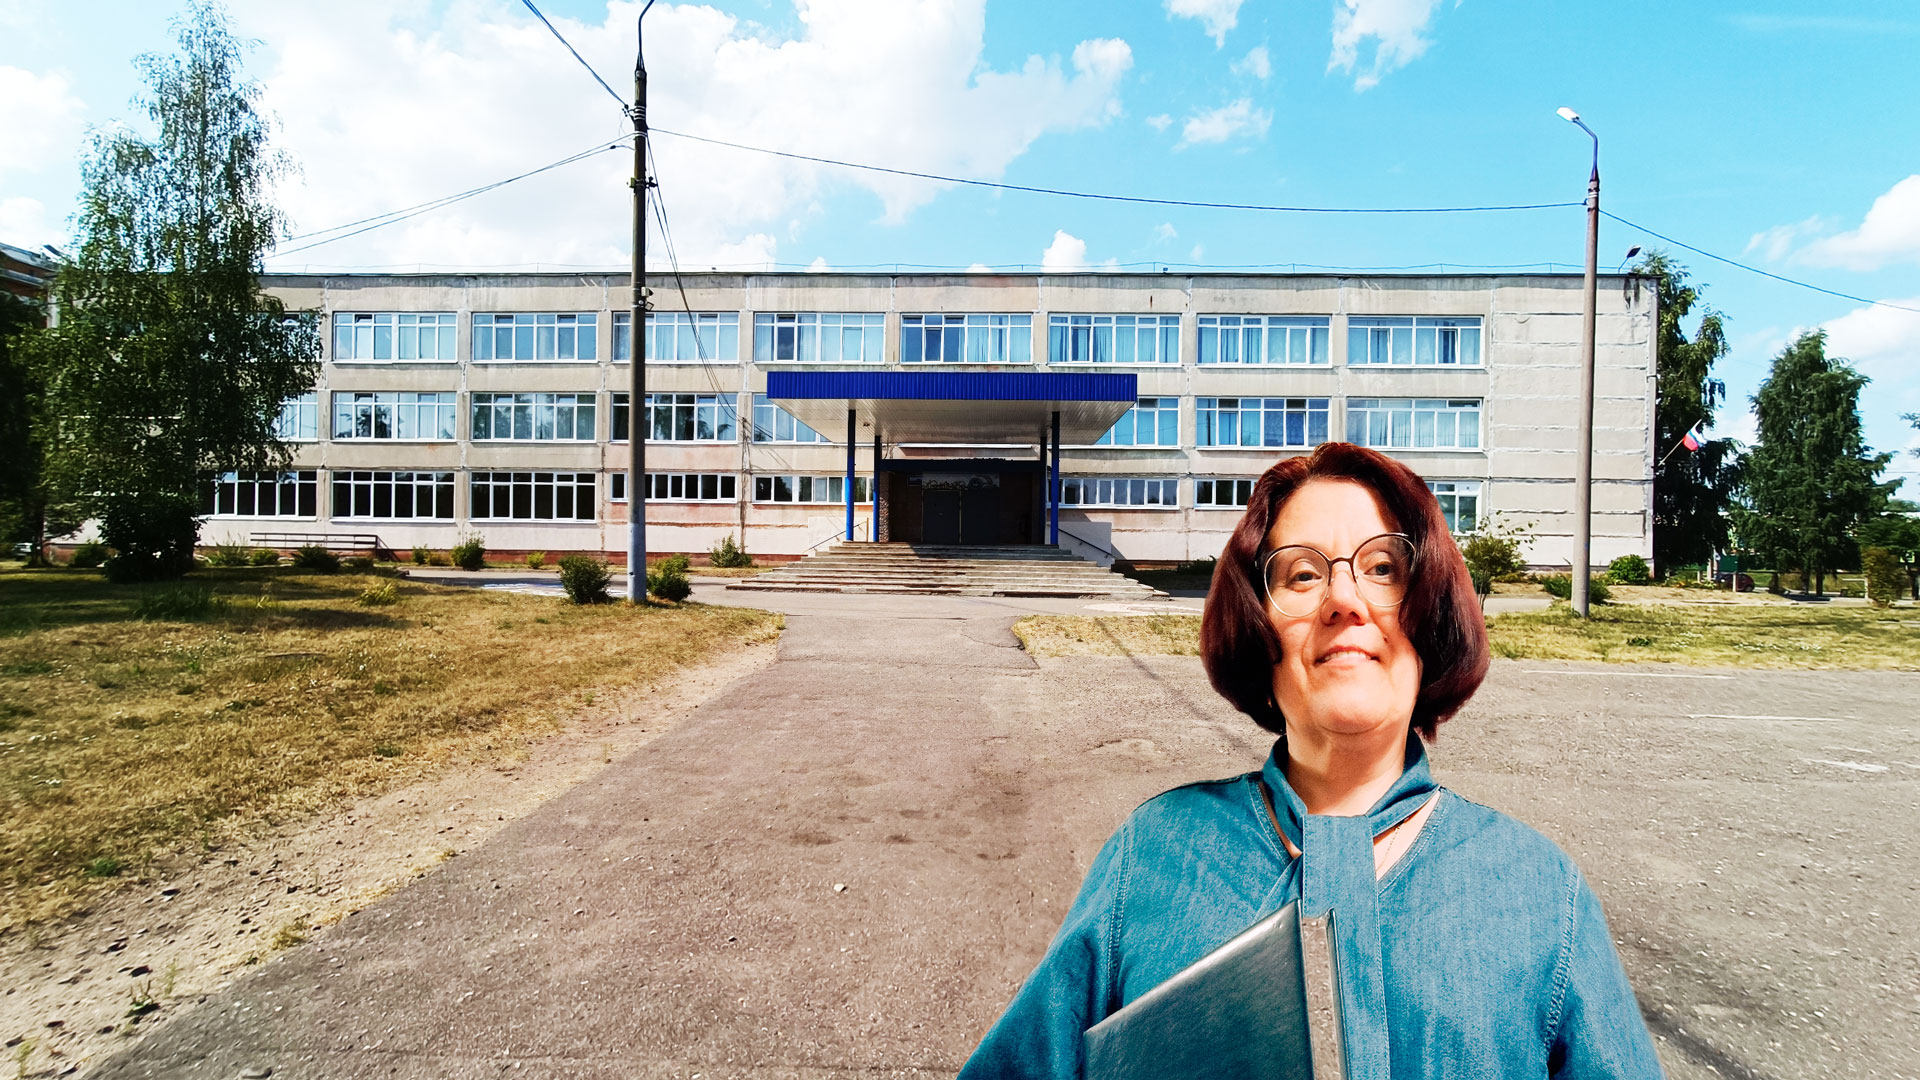 Школа 88 Ярославль: центральный вход в здание школьной организации.